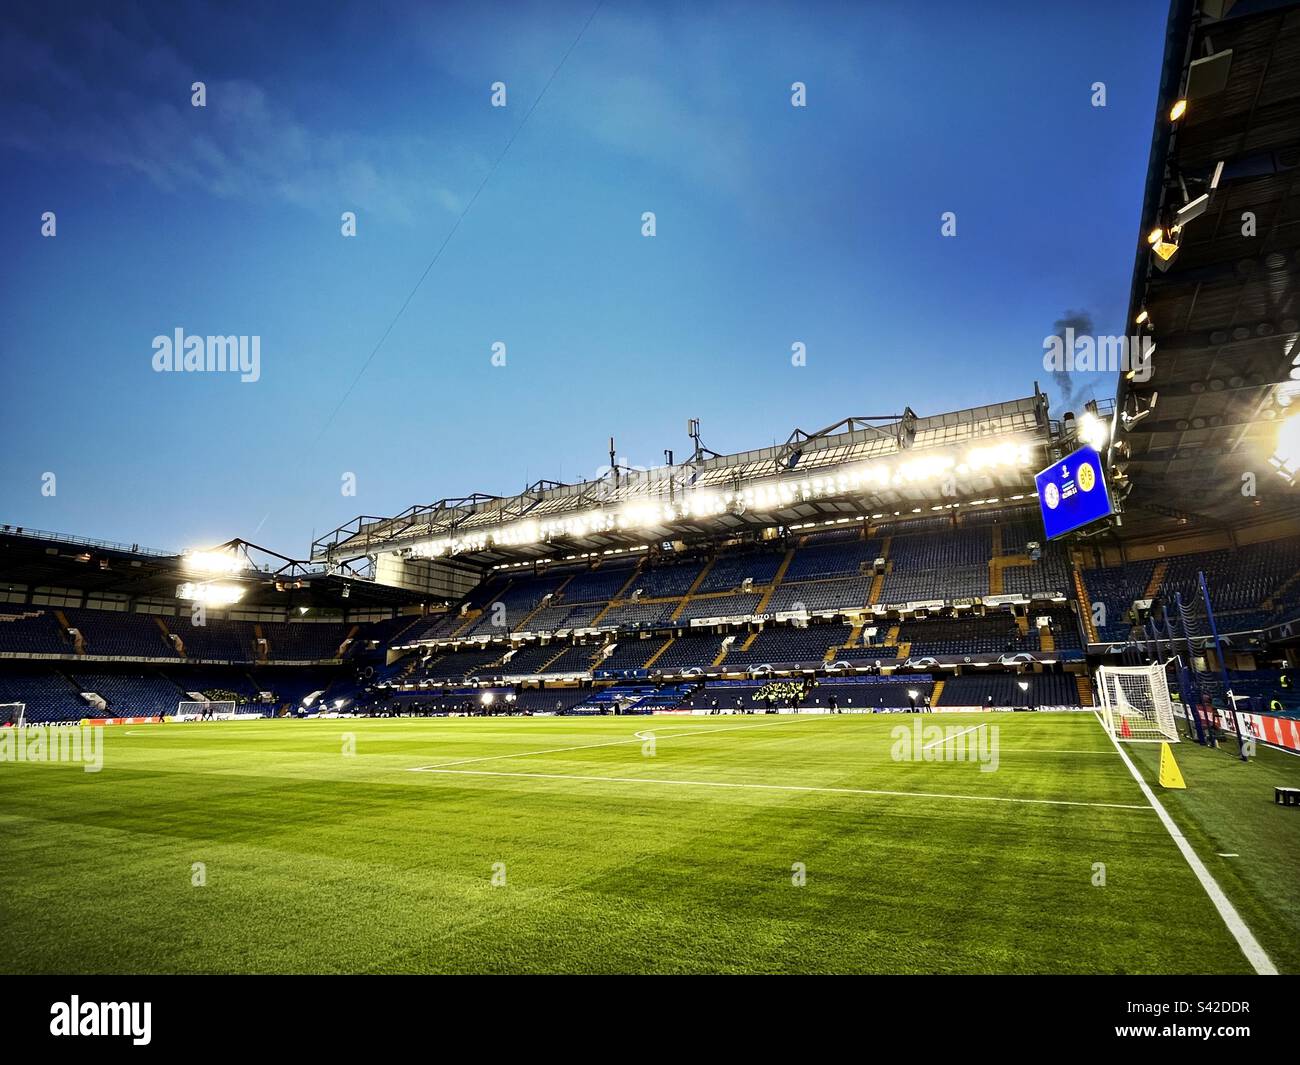 Vue générale sur le terrain de football de Stamford Bridge, qui abrite le club de football de Chelsea dans l'ouest de Londres. Banque D'Images